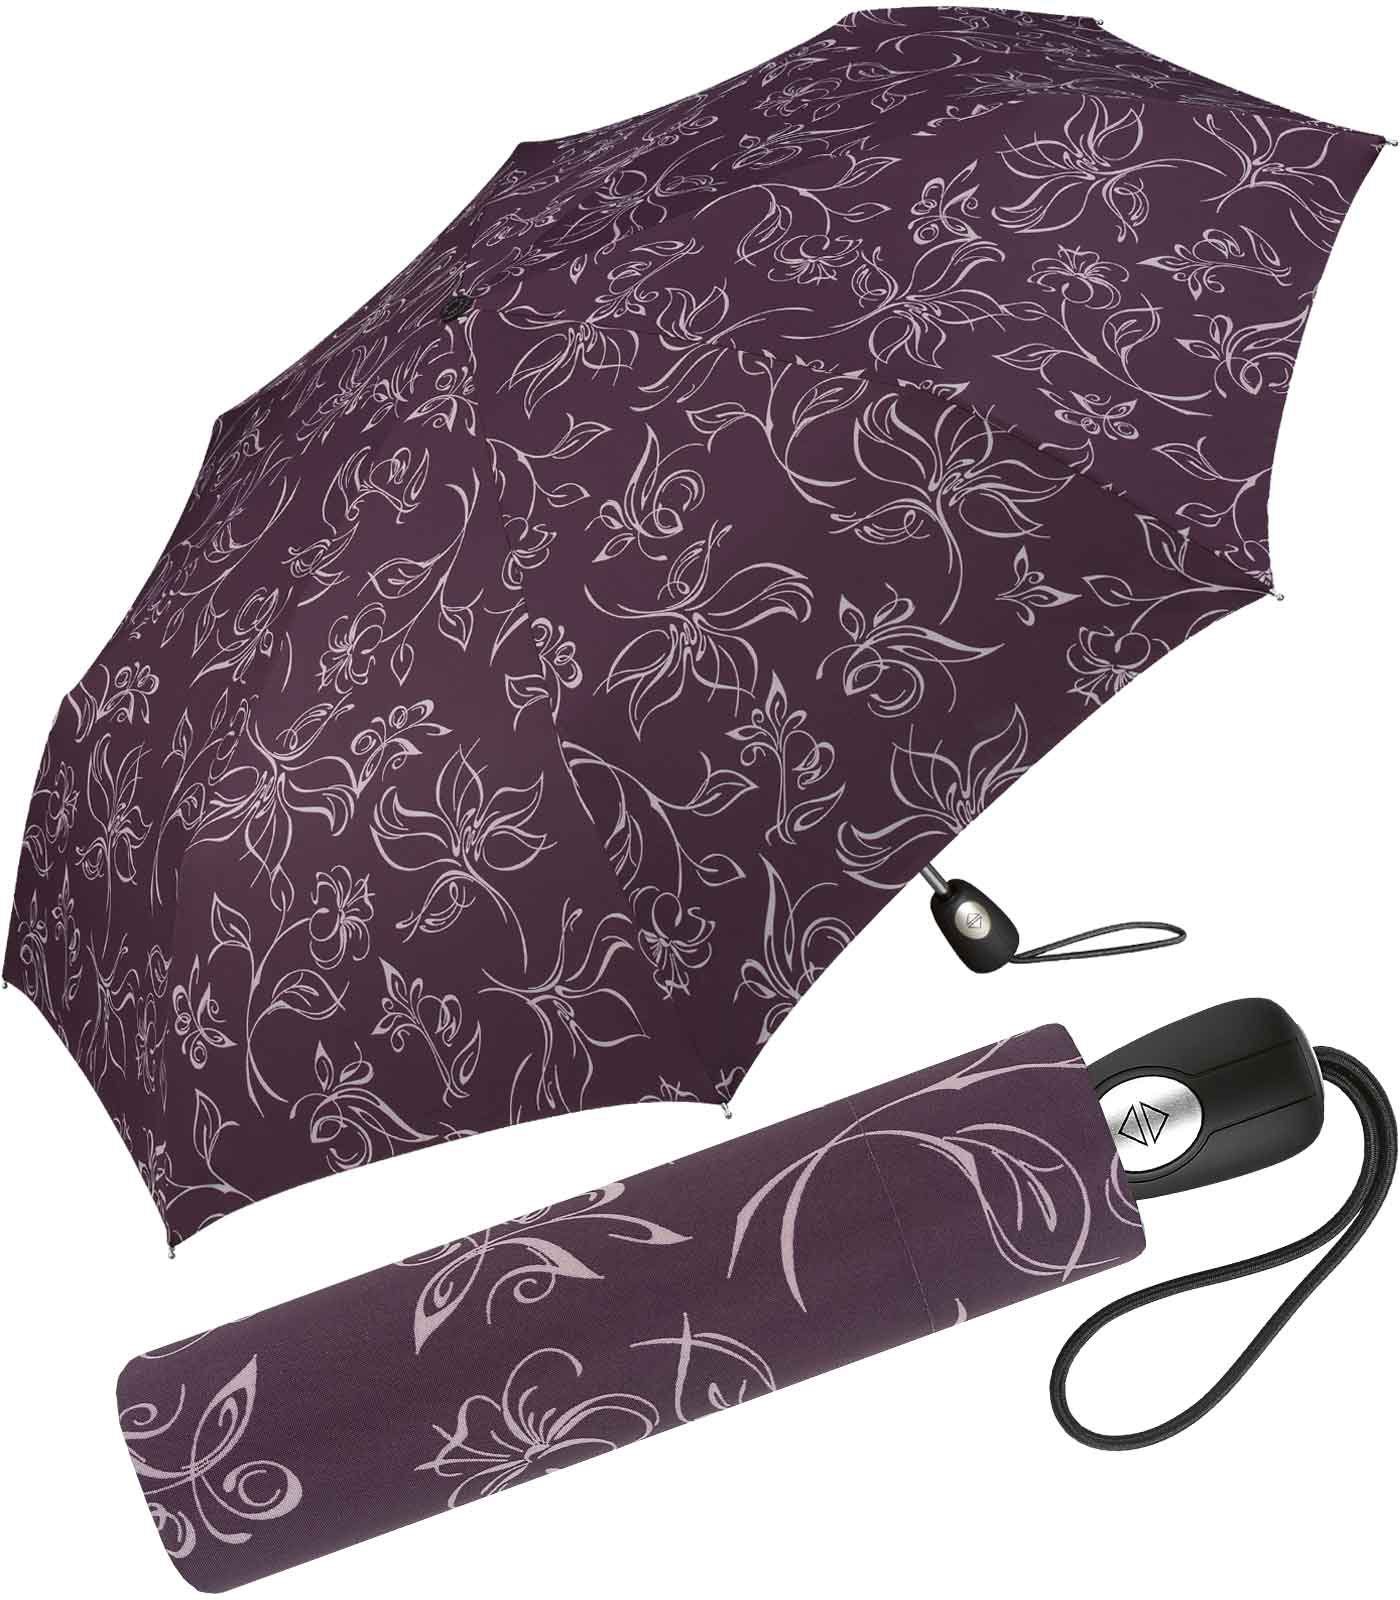 Damen-Regenschirm Pierre Taschenregenschirm schöner Blumenskizzen mit mit Cardin wunderschönen Auf-Zu-Automatik, weiß-bordeauxrot